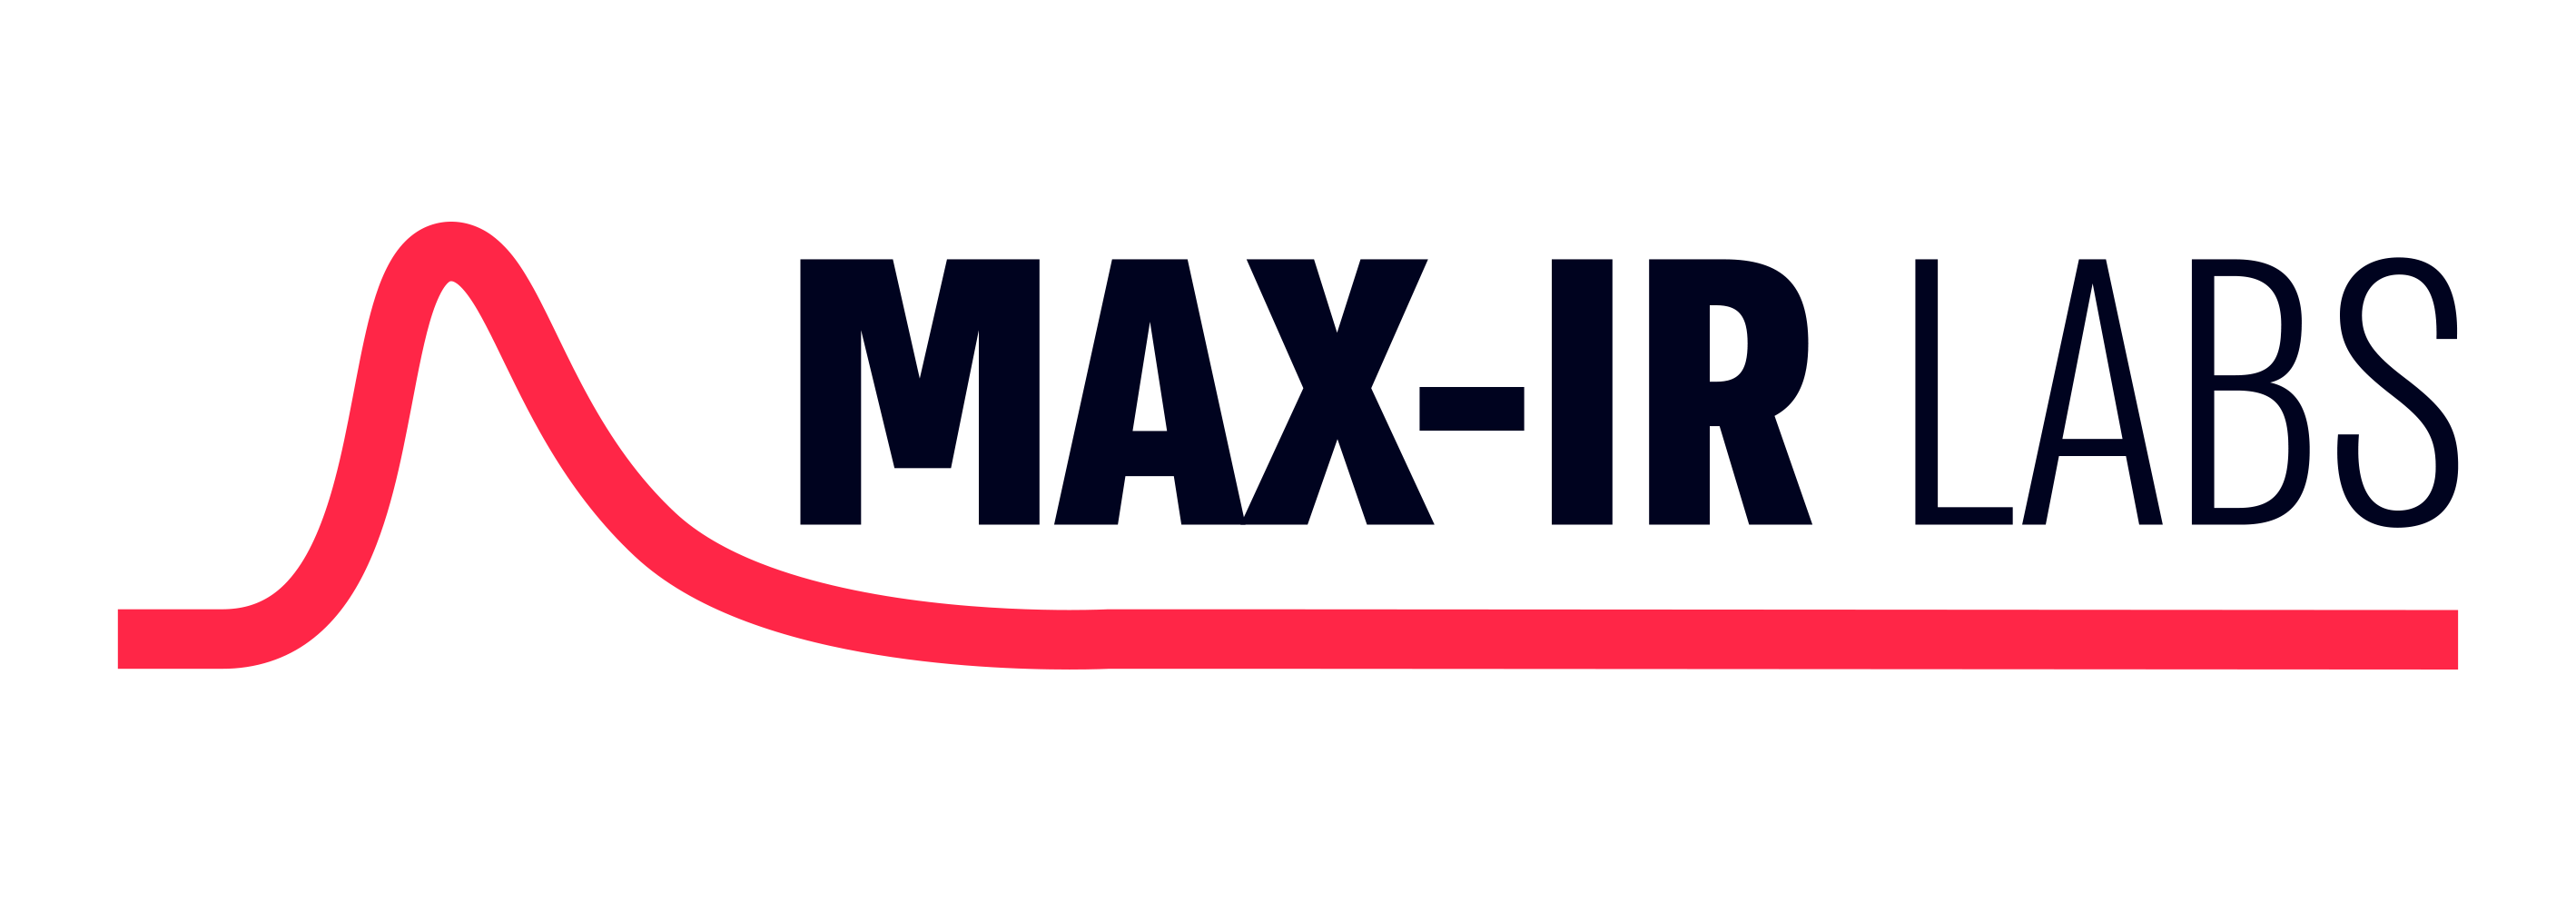 Max-IR Labs